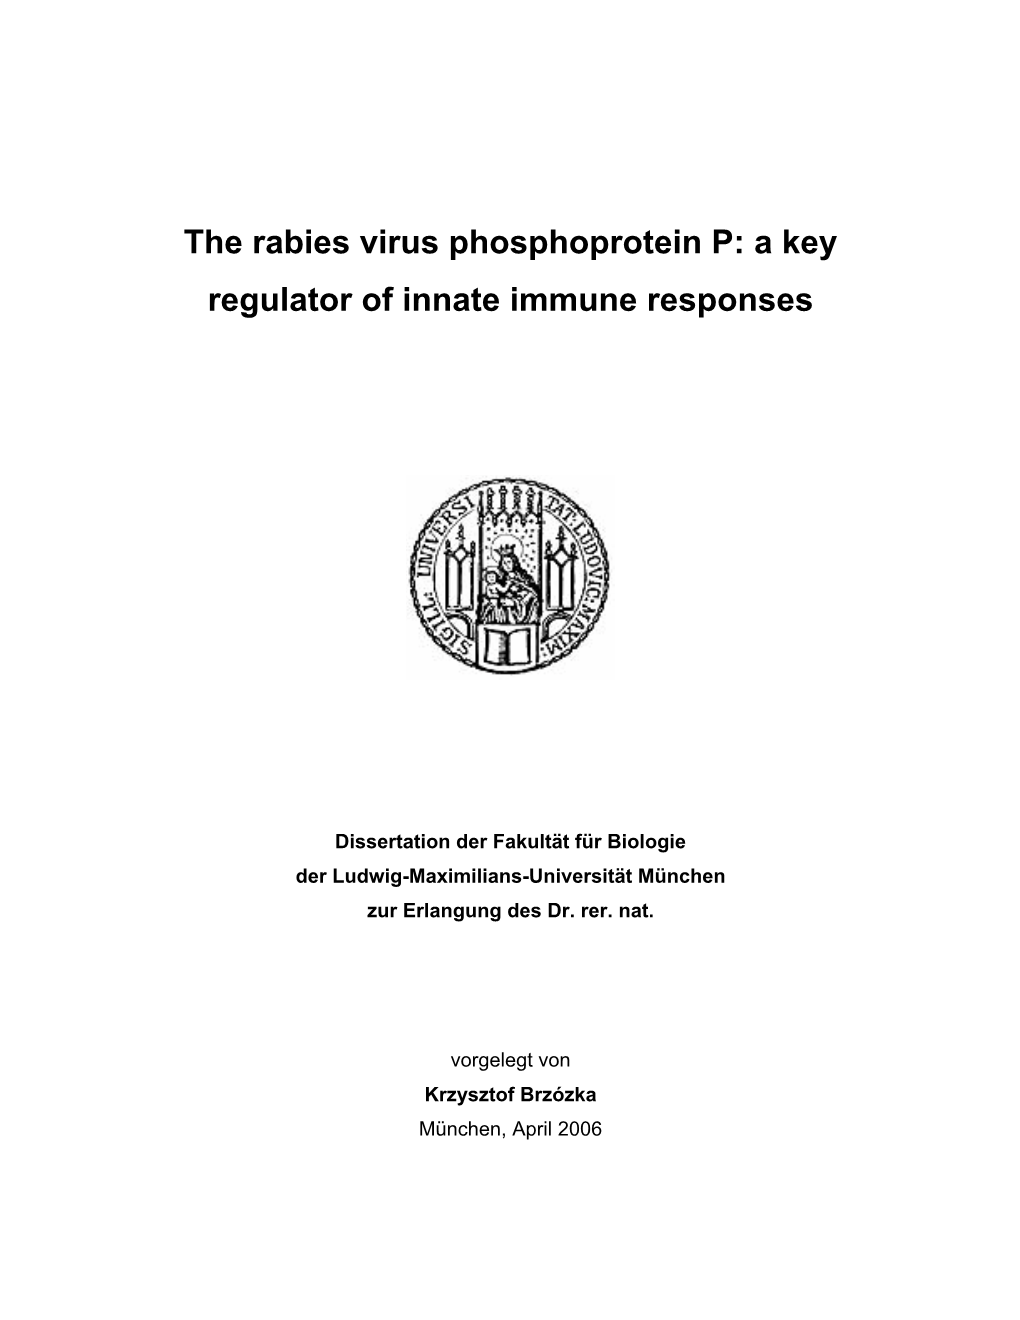 The Rabies Virus Phosphoprotein P: a Key Regulator of Innate Immune Responses